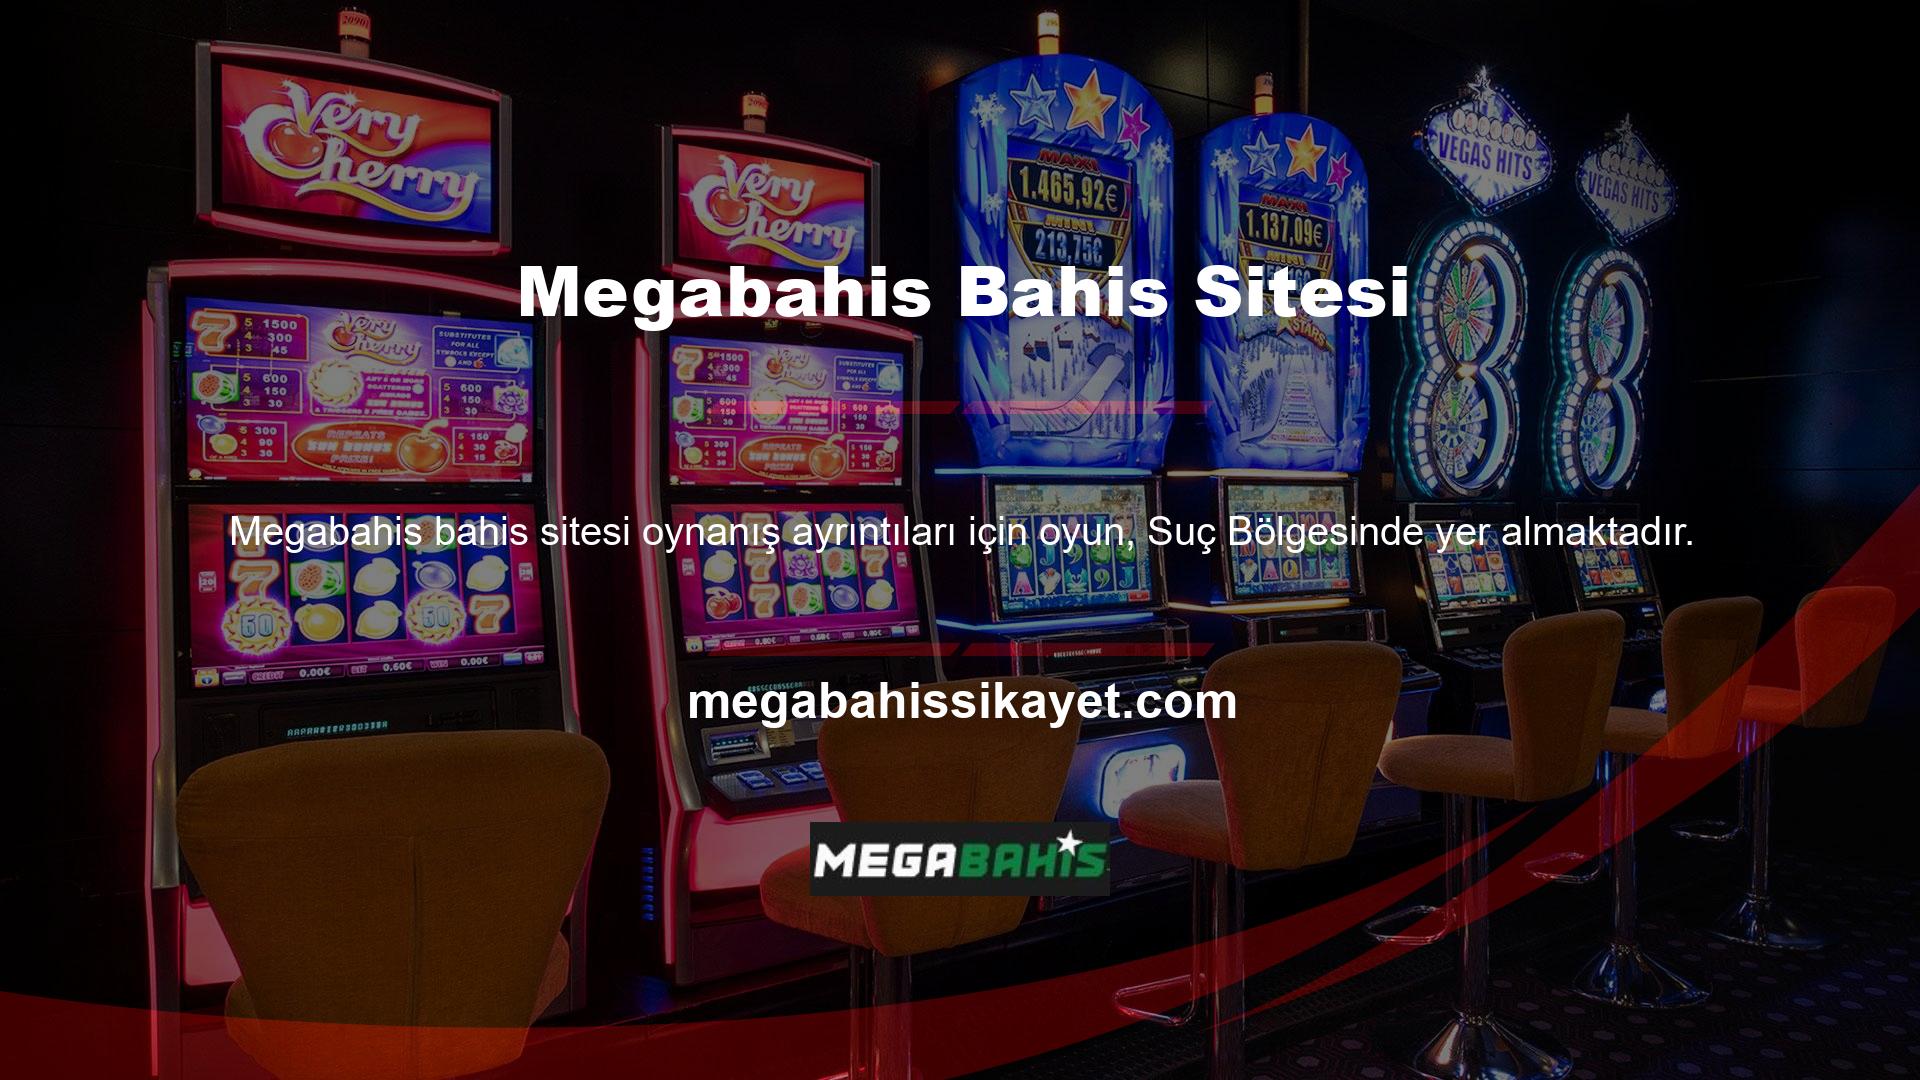 Megabahis bahis sitesi web arayüzü ile de bilinmektedir